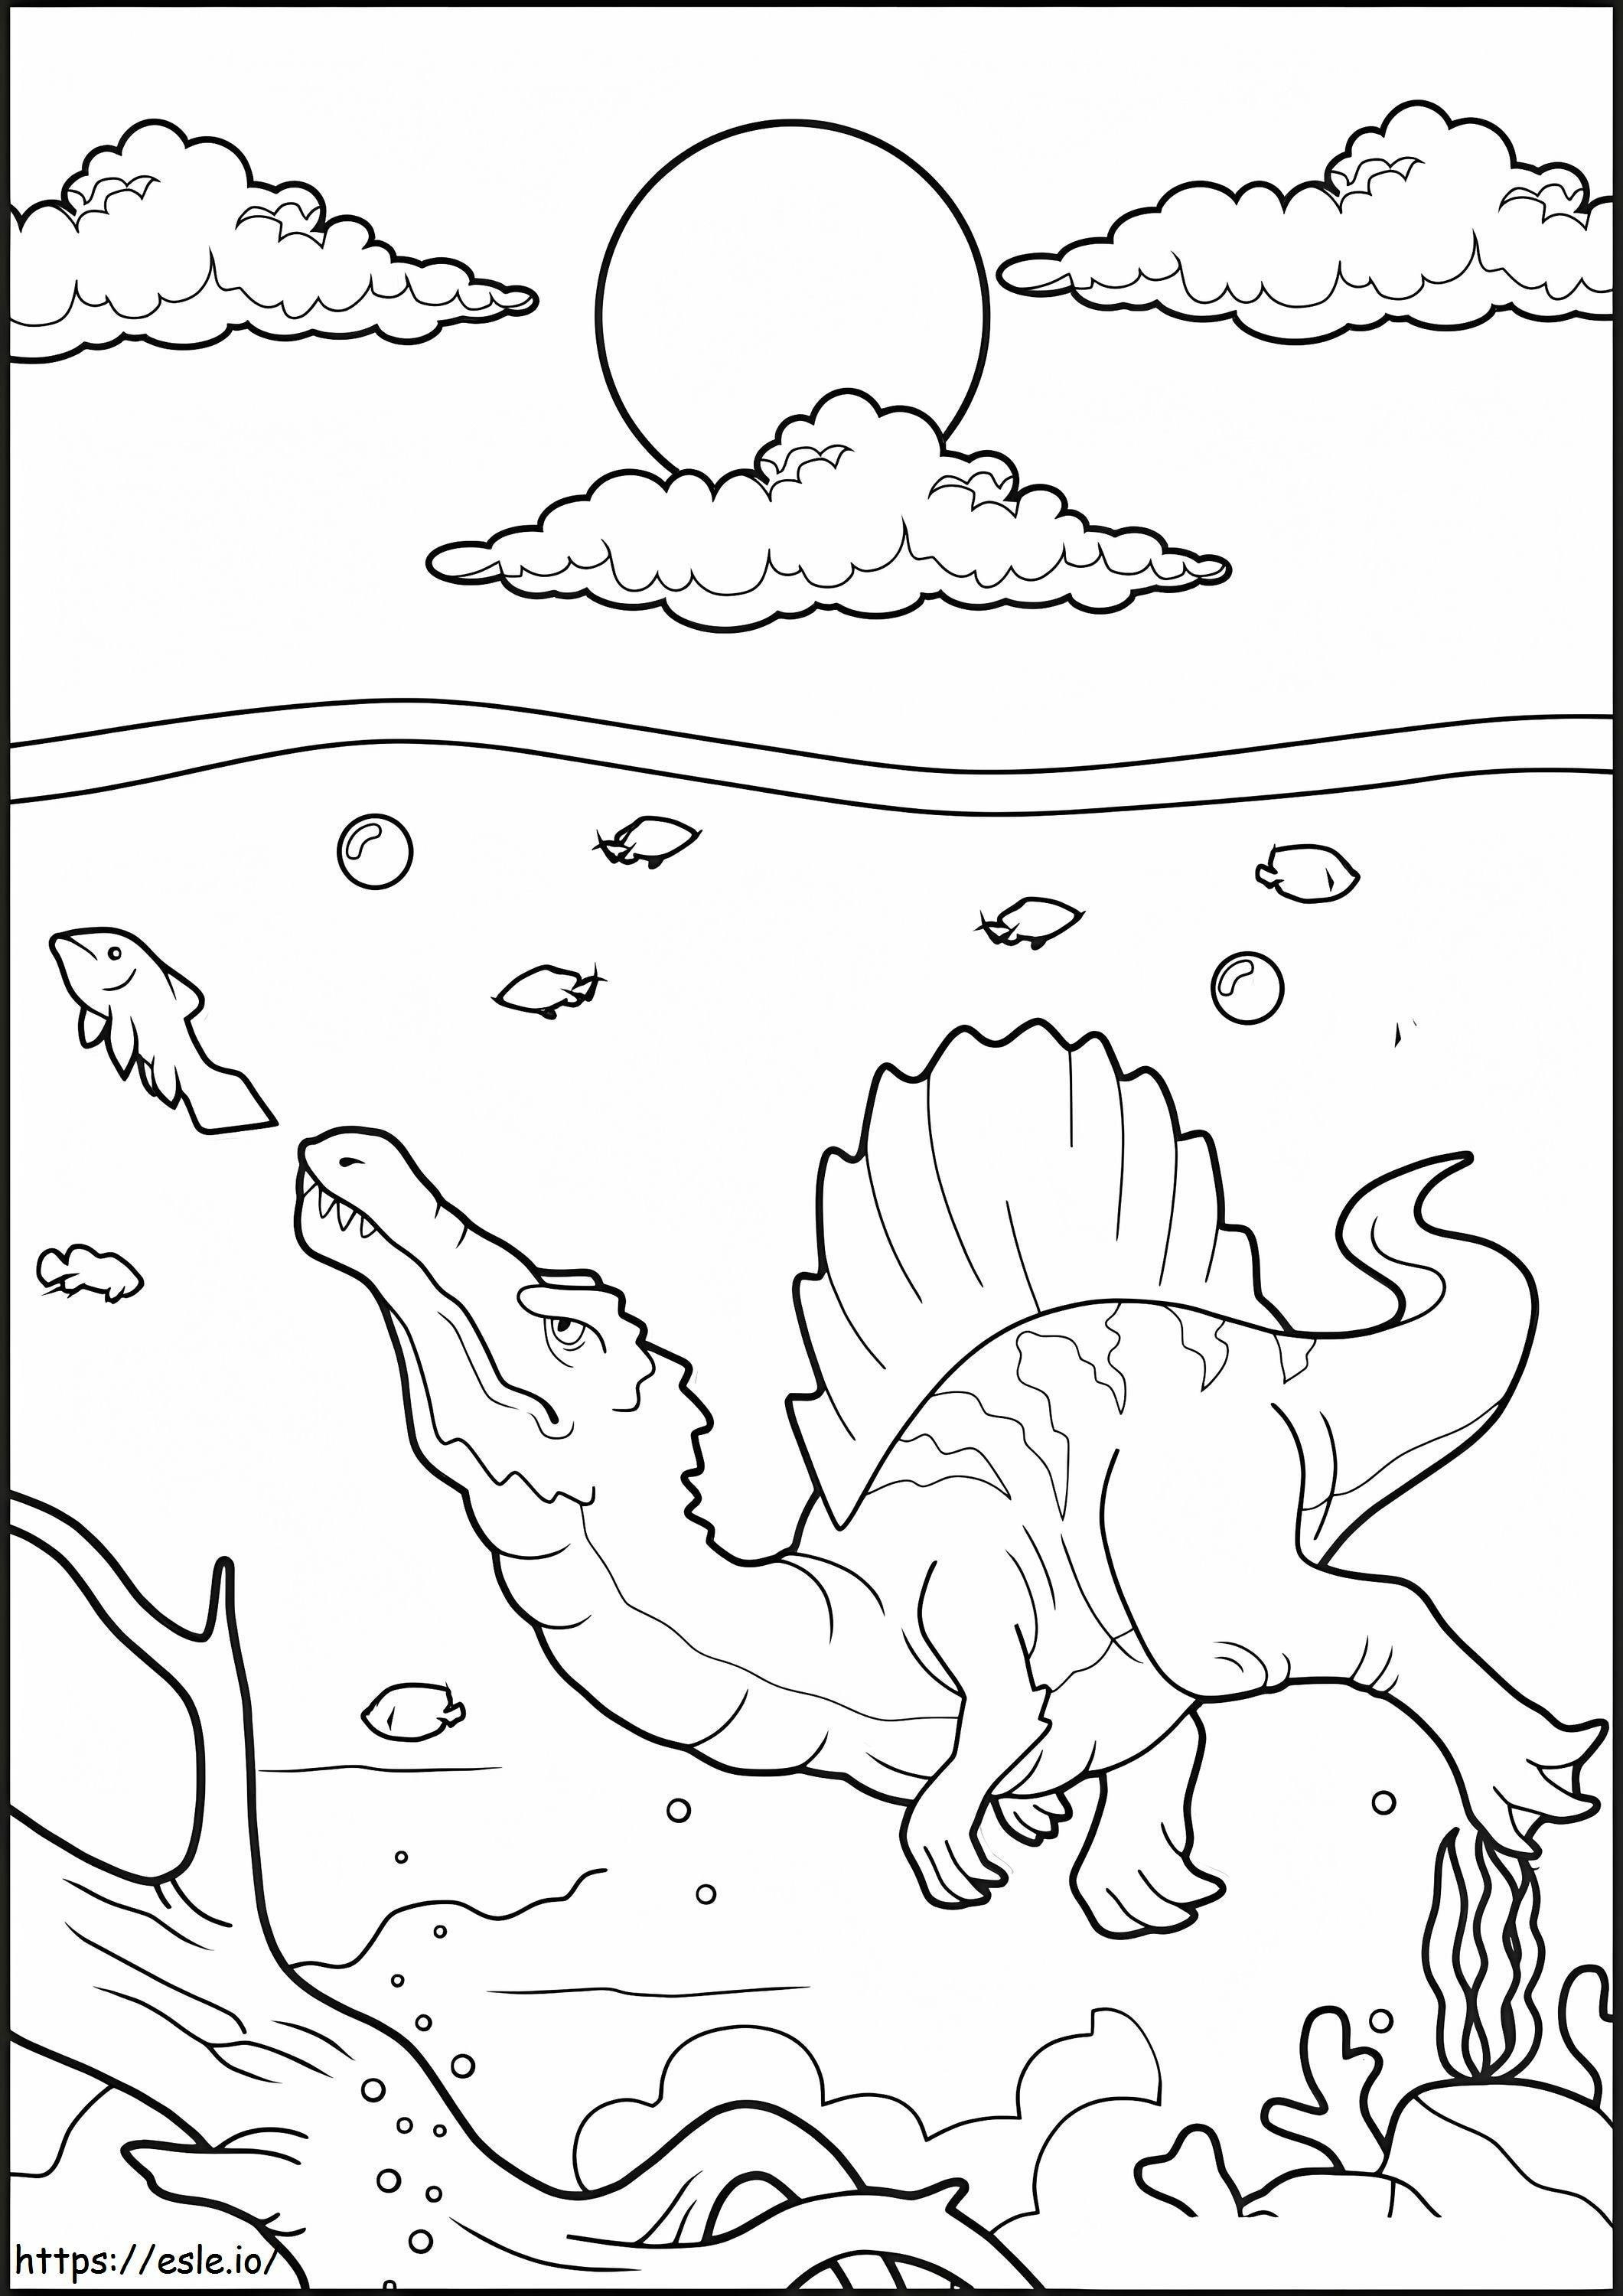 Spinosaurus víz alatt kifestő